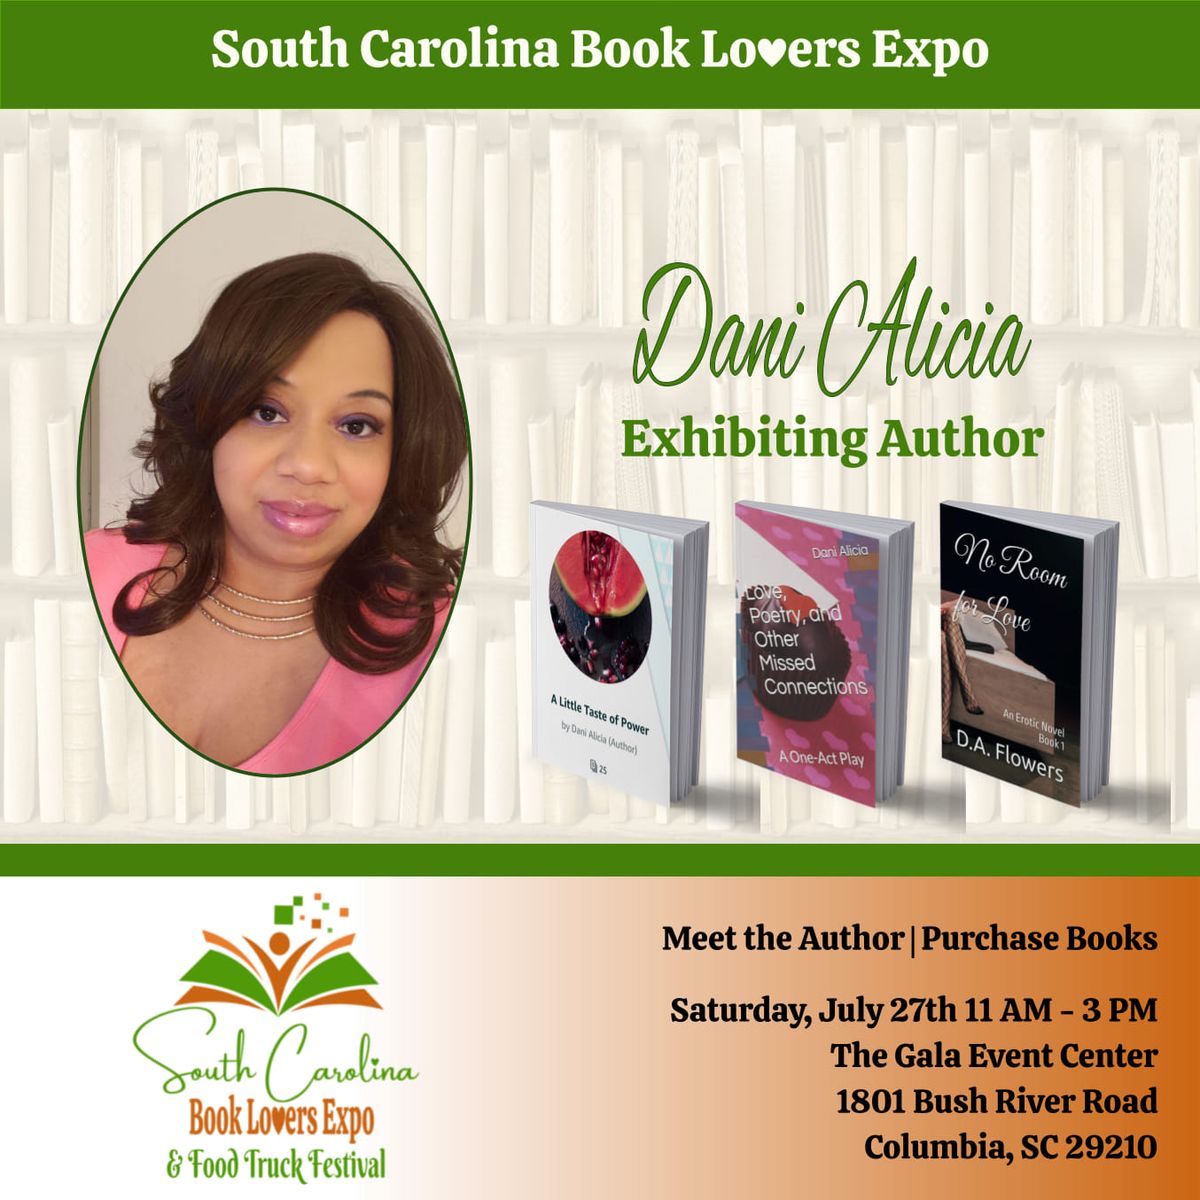 South Carolina Book Lovers Expo